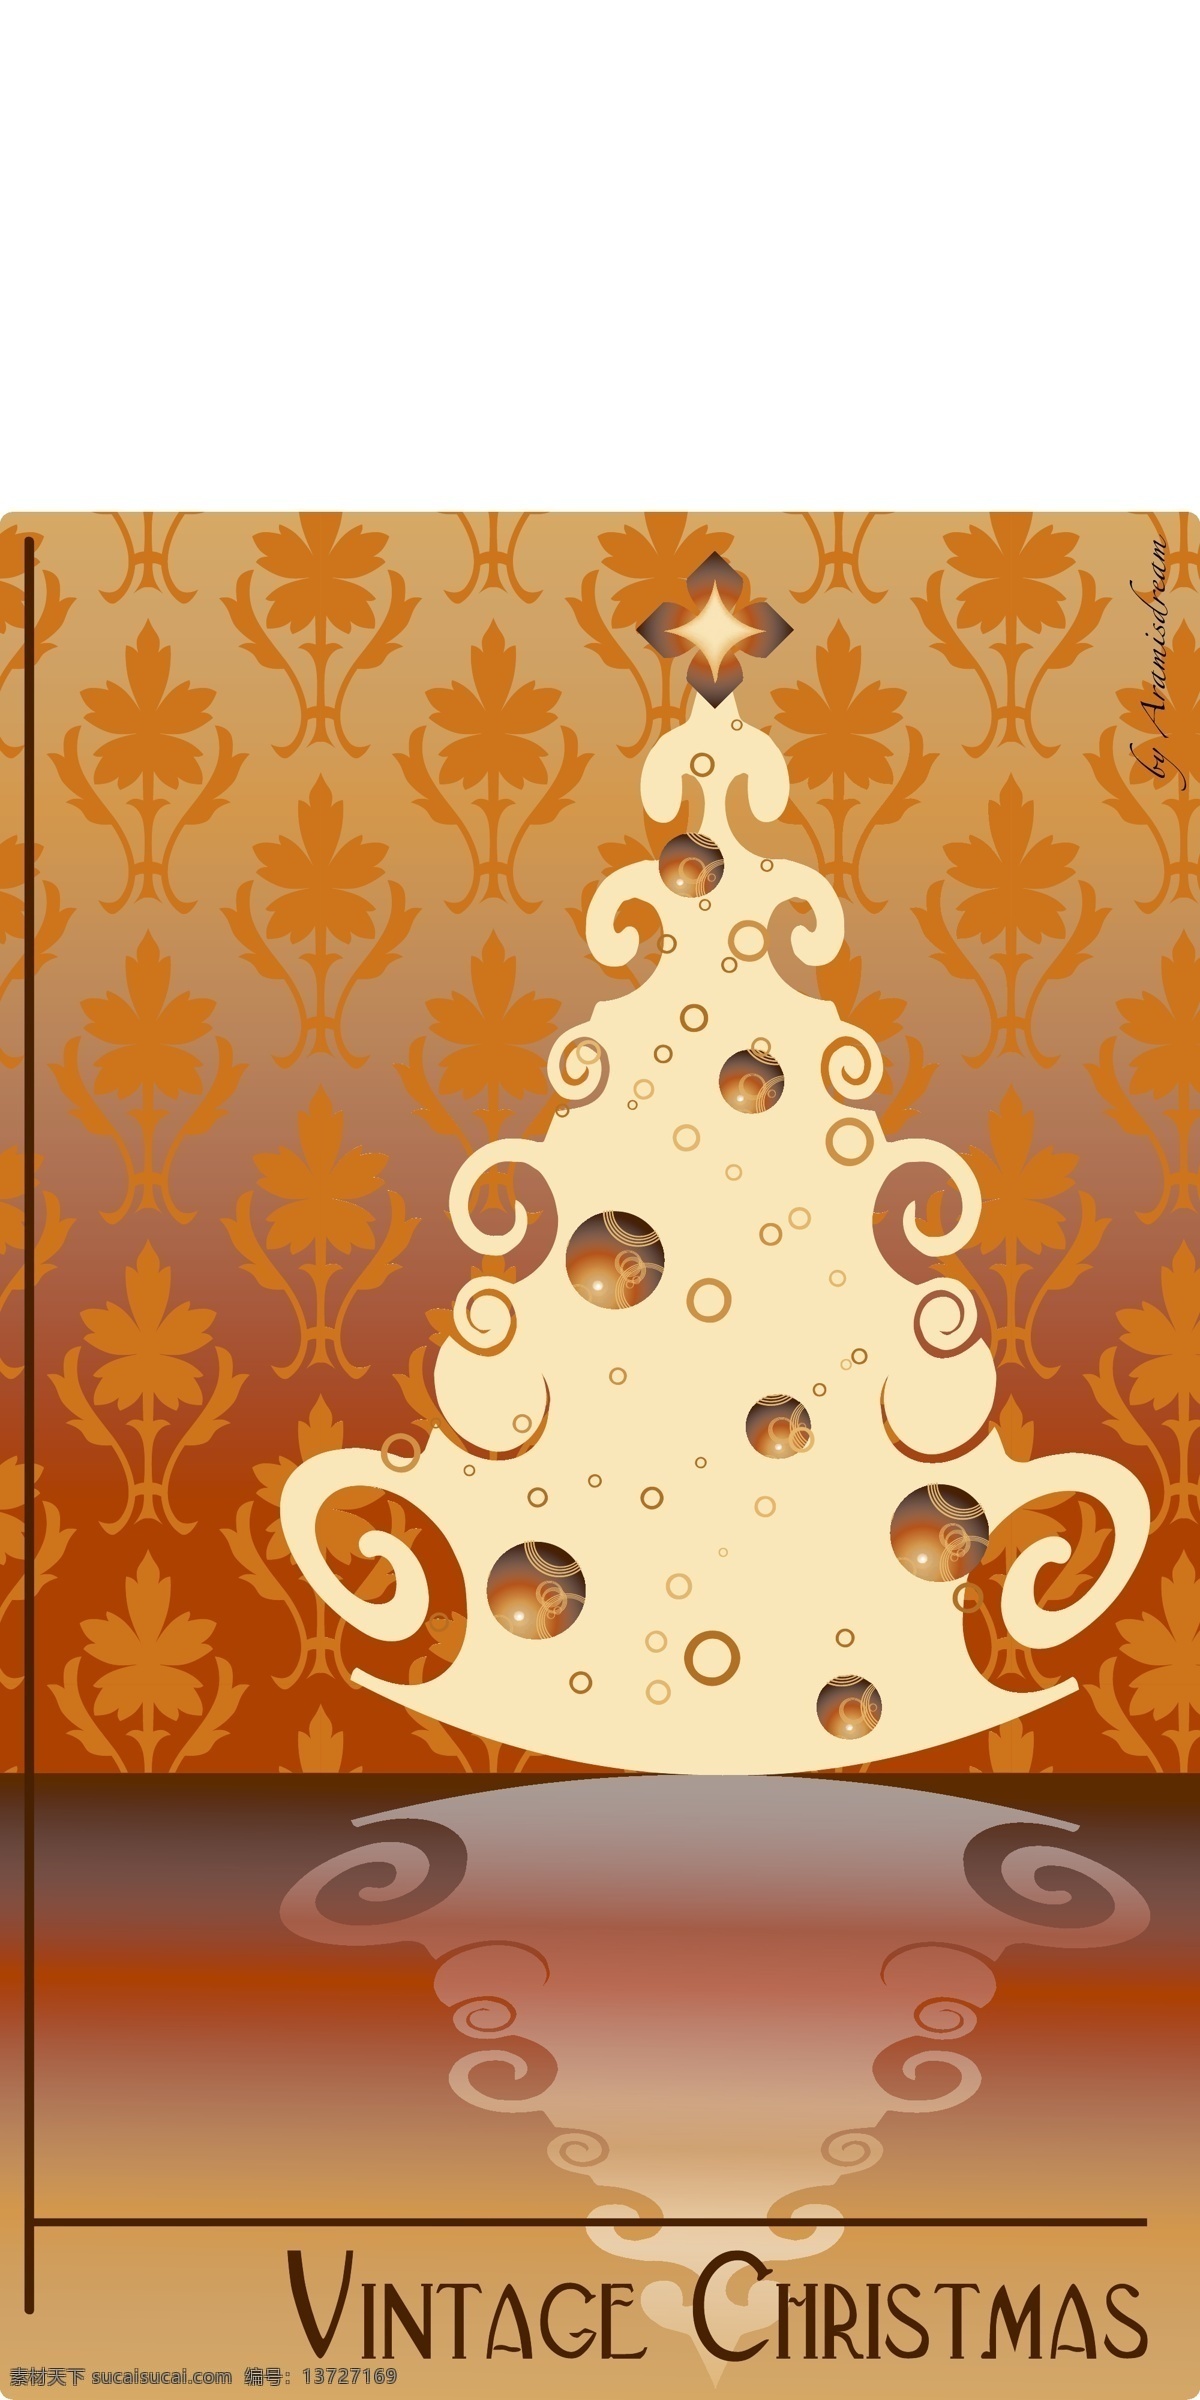 复古 圣诞 免费 矢量 背景壁纸 庆典和聚会 圣诞节 设计元素 食品饮料 节假日 季节性 自然的 纹理和图案 矢量艺术 古董和复古 模板和模型